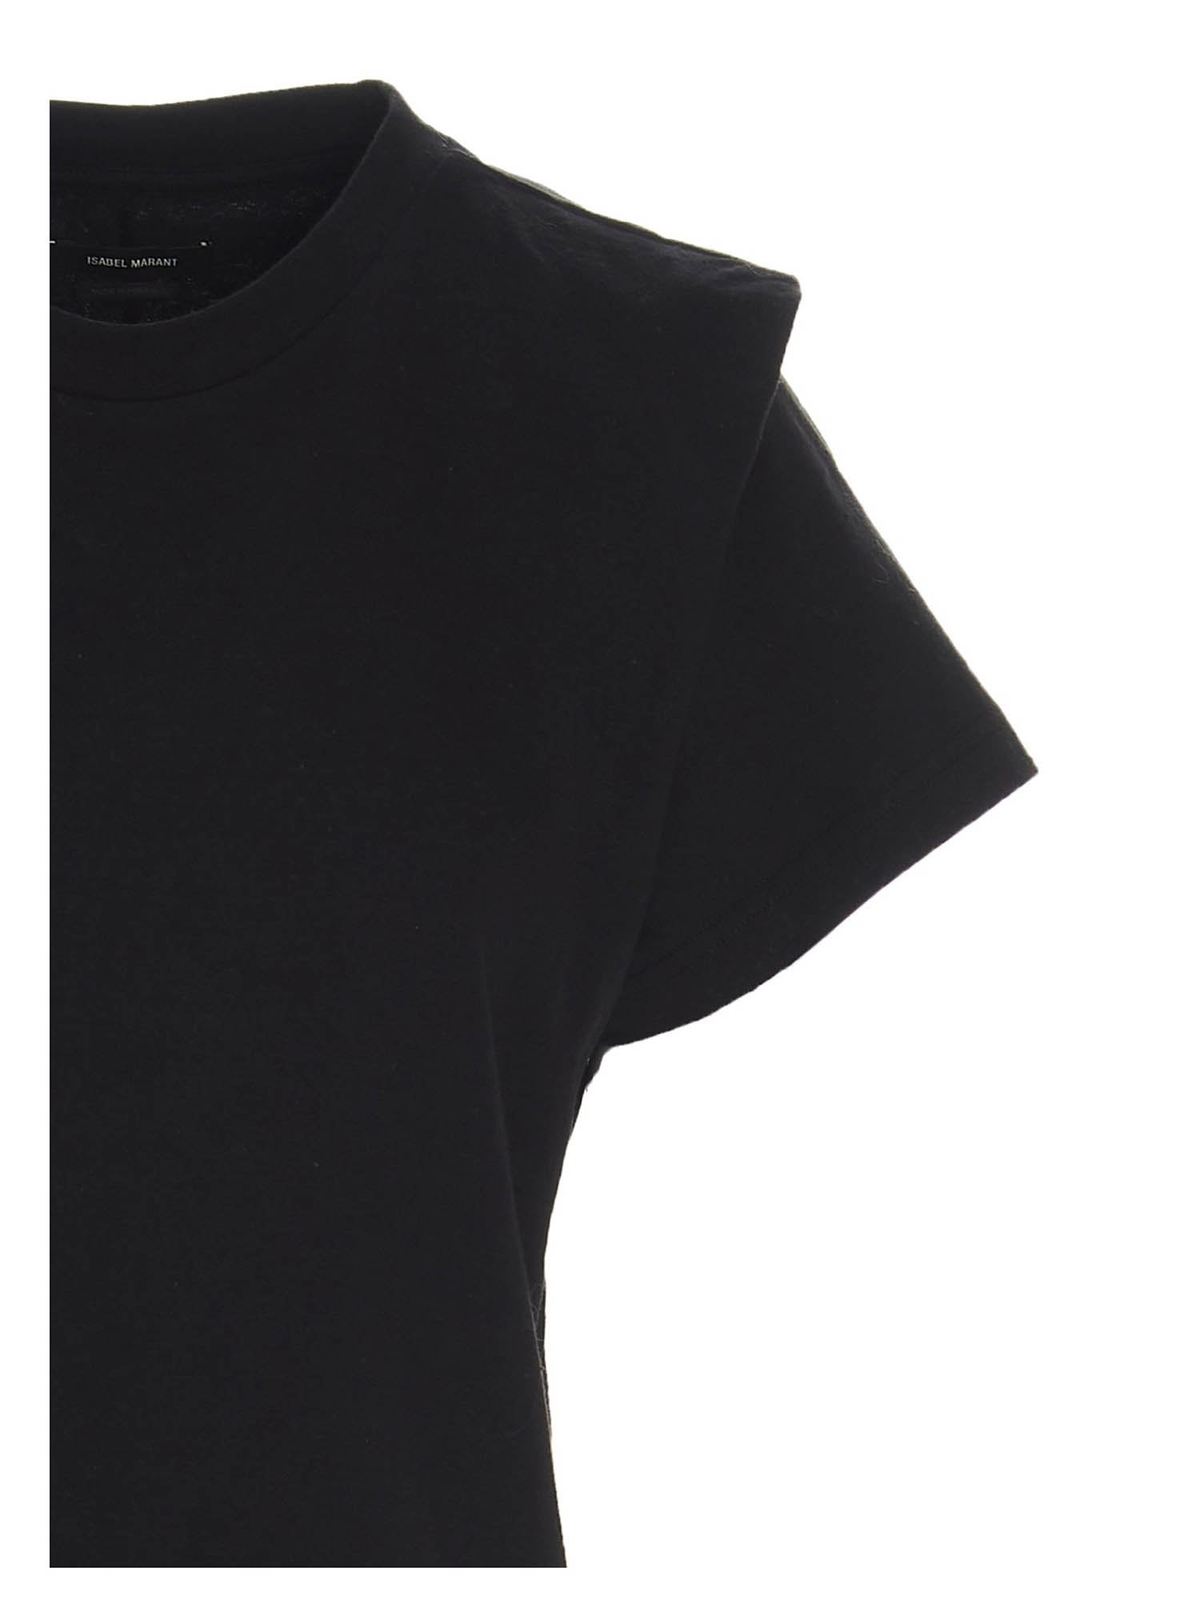 Zelitos t-shirt in black